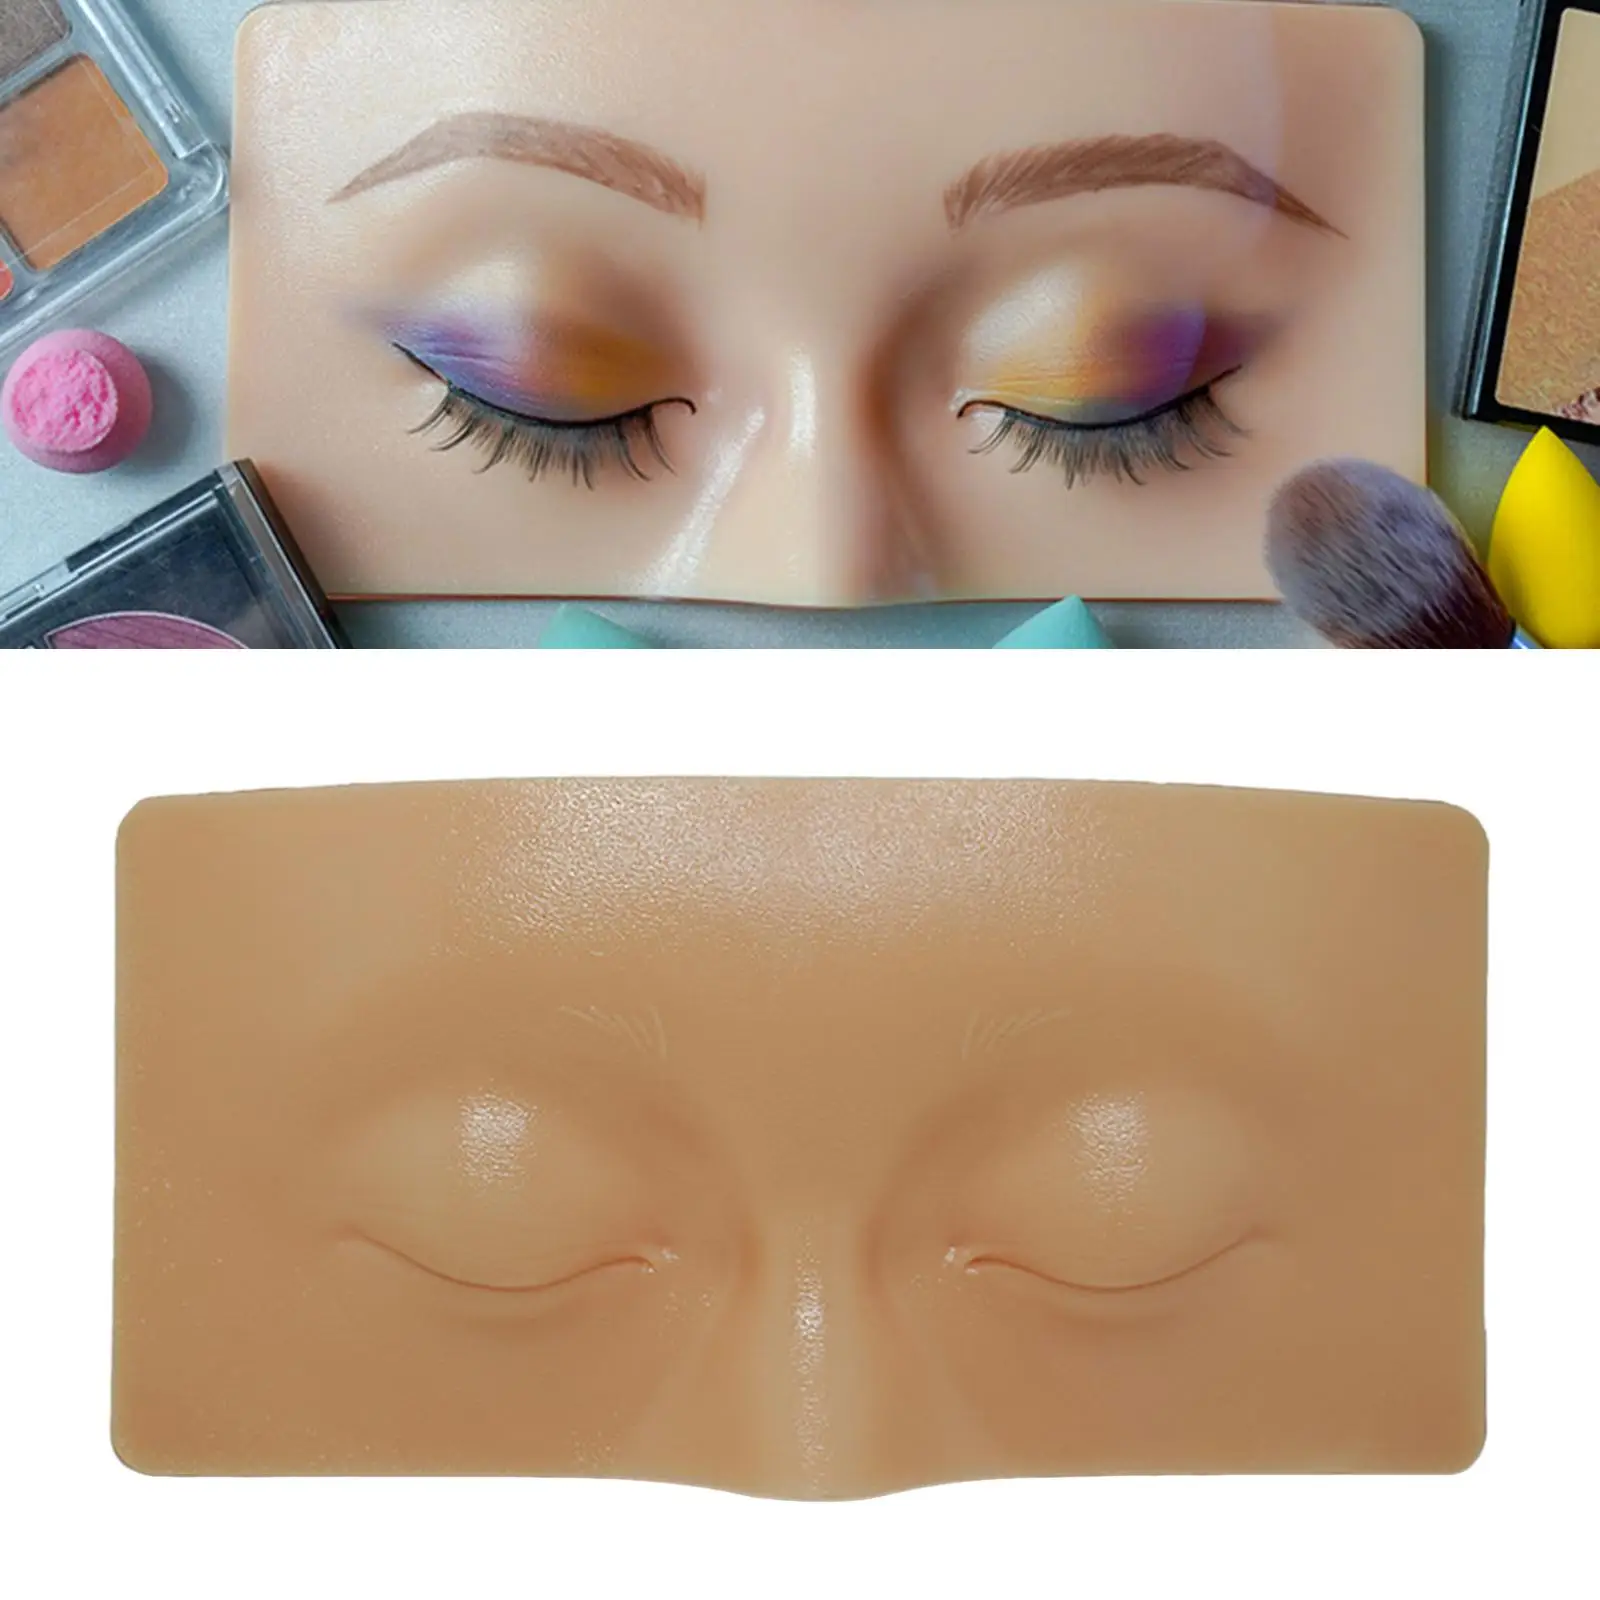 3D Makeup Practice face Reusable Practice Eyesmakeup for Training